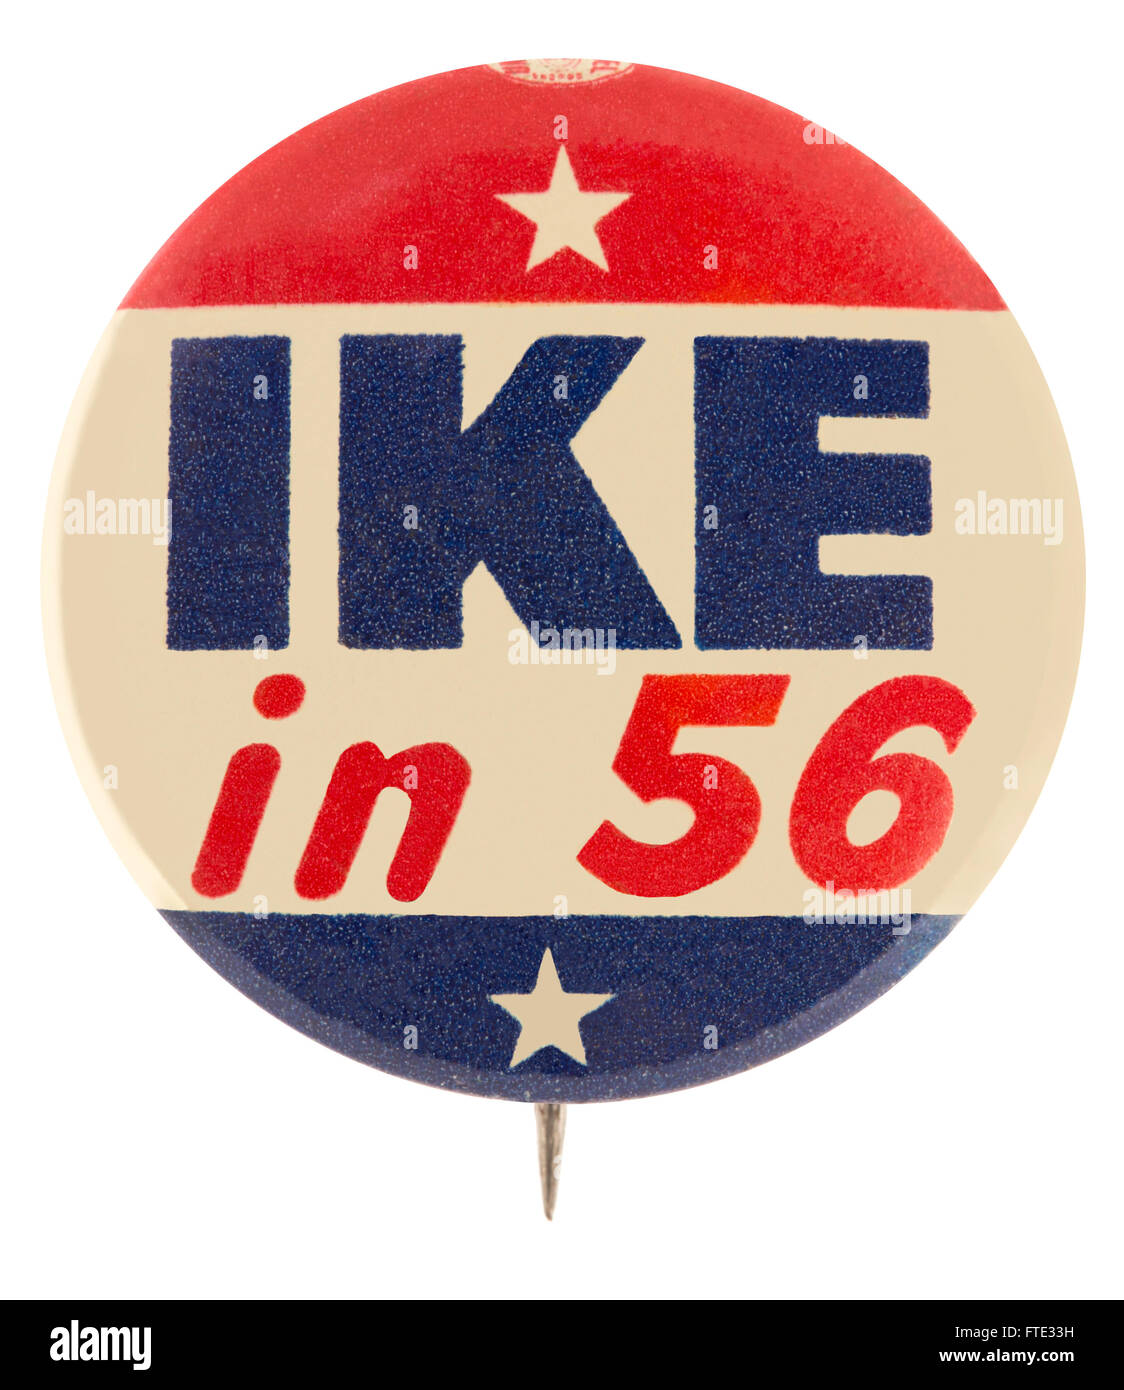 Dwight D. Eisenhower Präsidentenkampagne 1956 pin zurück Knopf Abzeichen Stockfoto